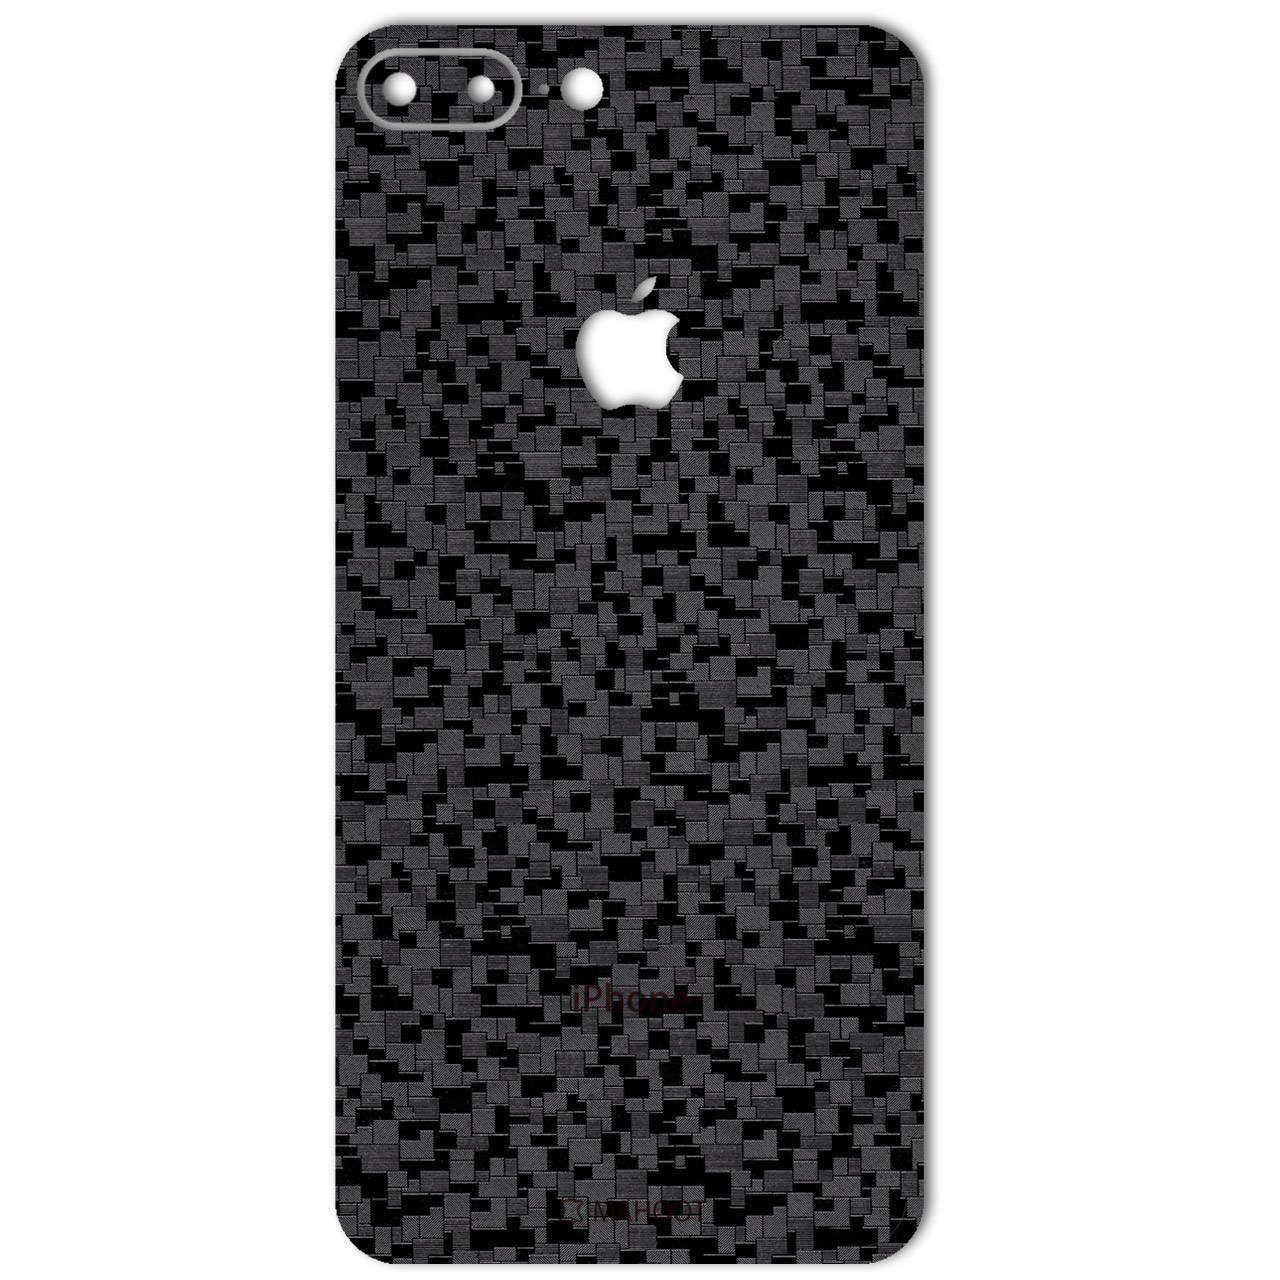 نکته خرید - قیمت روز برچسب پوششی ماهوت مدل Silicon Texture مناسب برای گوشی iPhone 7 Plus خرید